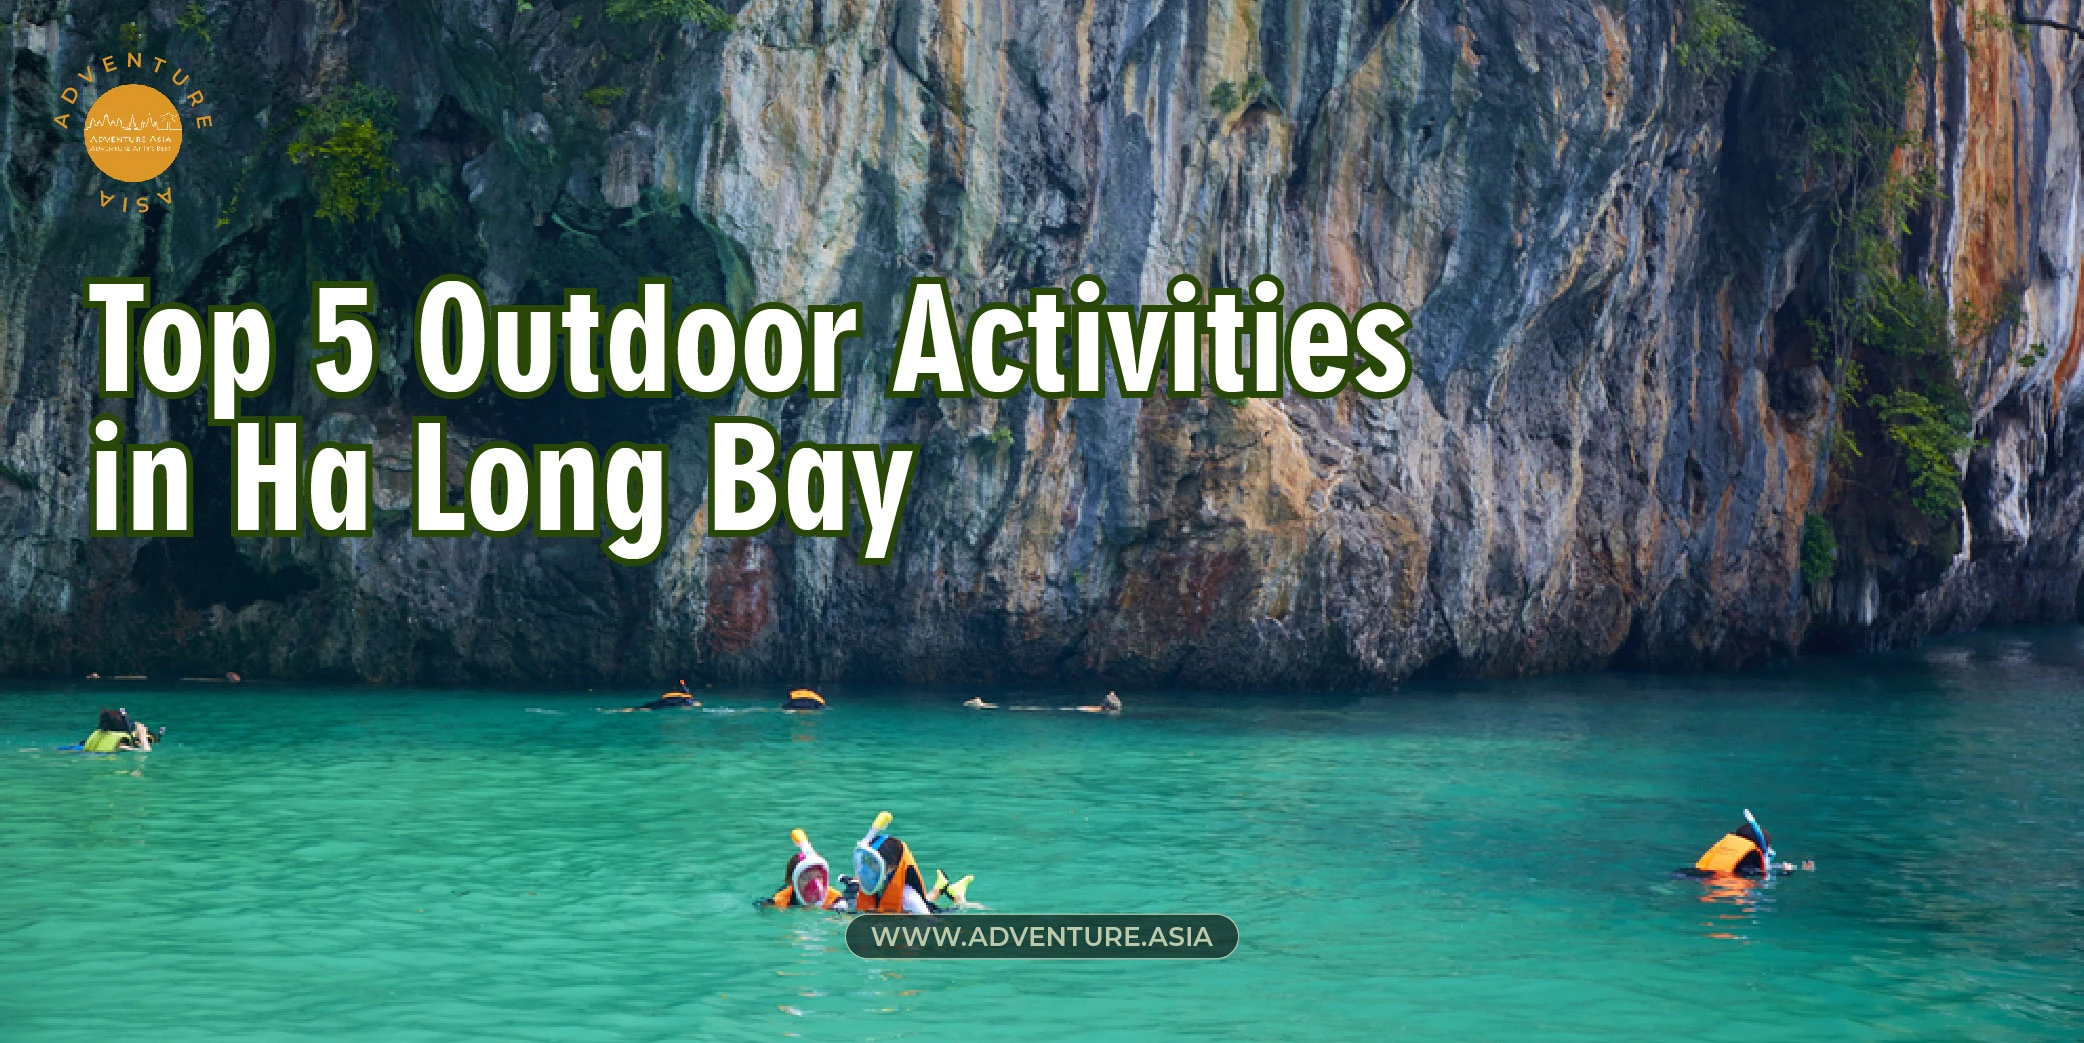 Top 5 Outdoor Activities in Ha Long Bay Vietnam for Adventurers